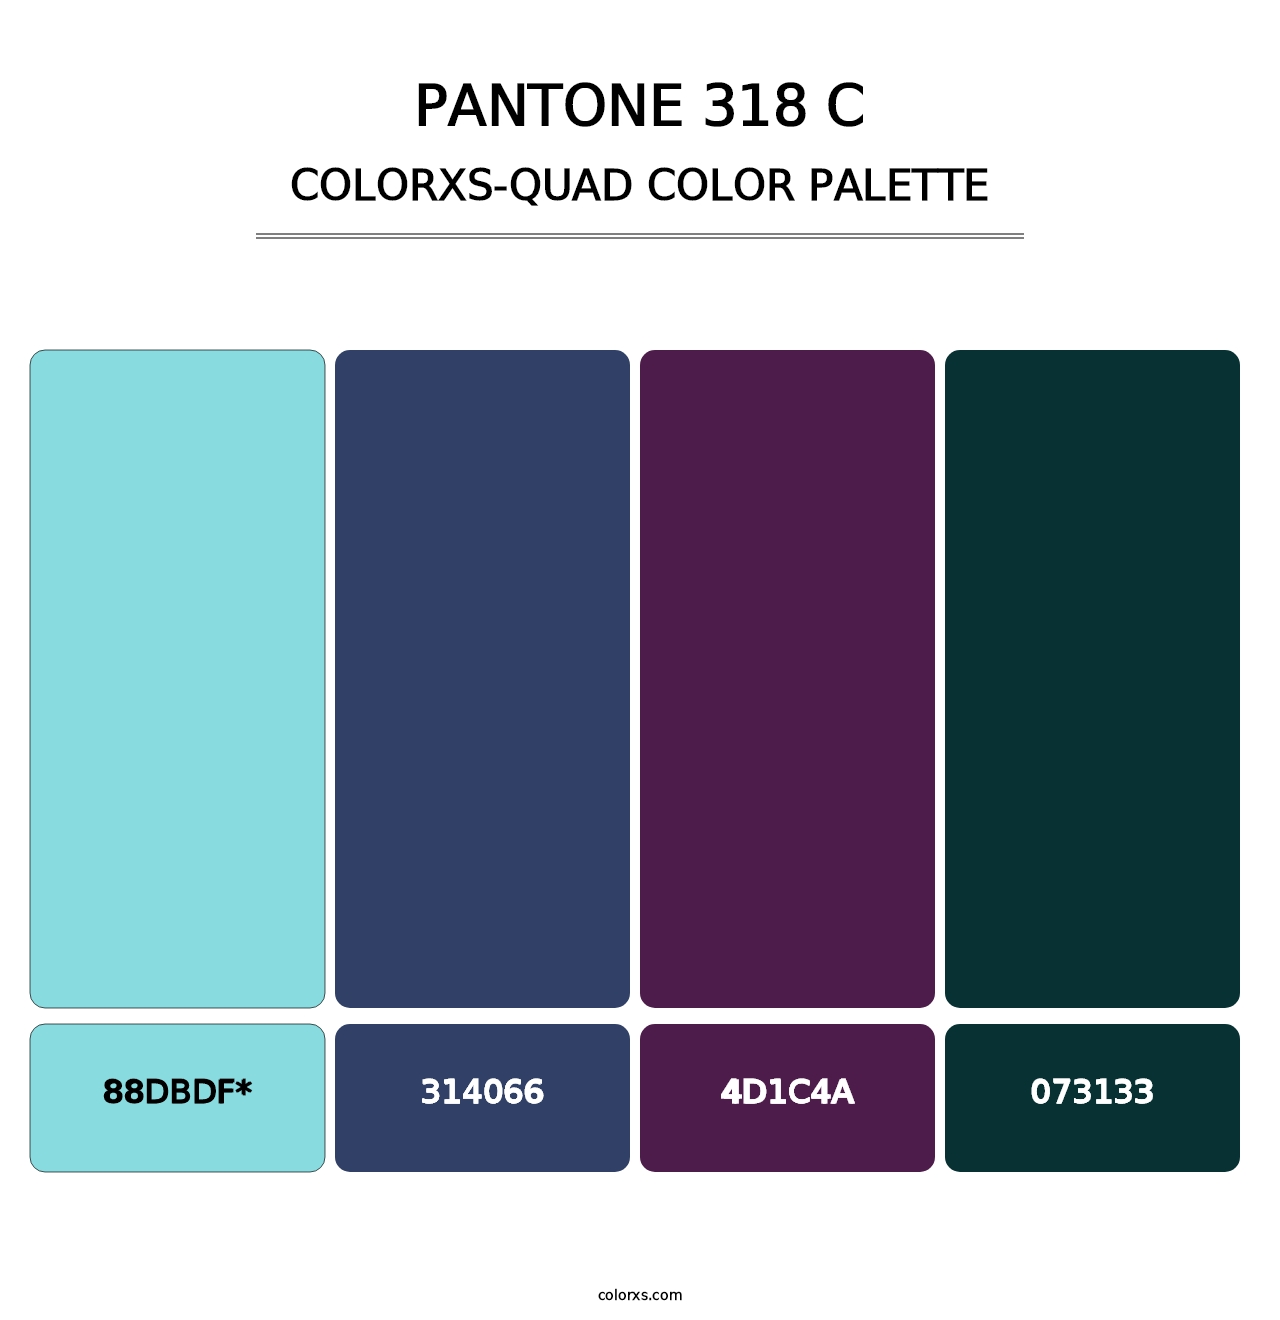 PANTONE 318 C - Colorxs Quad Palette